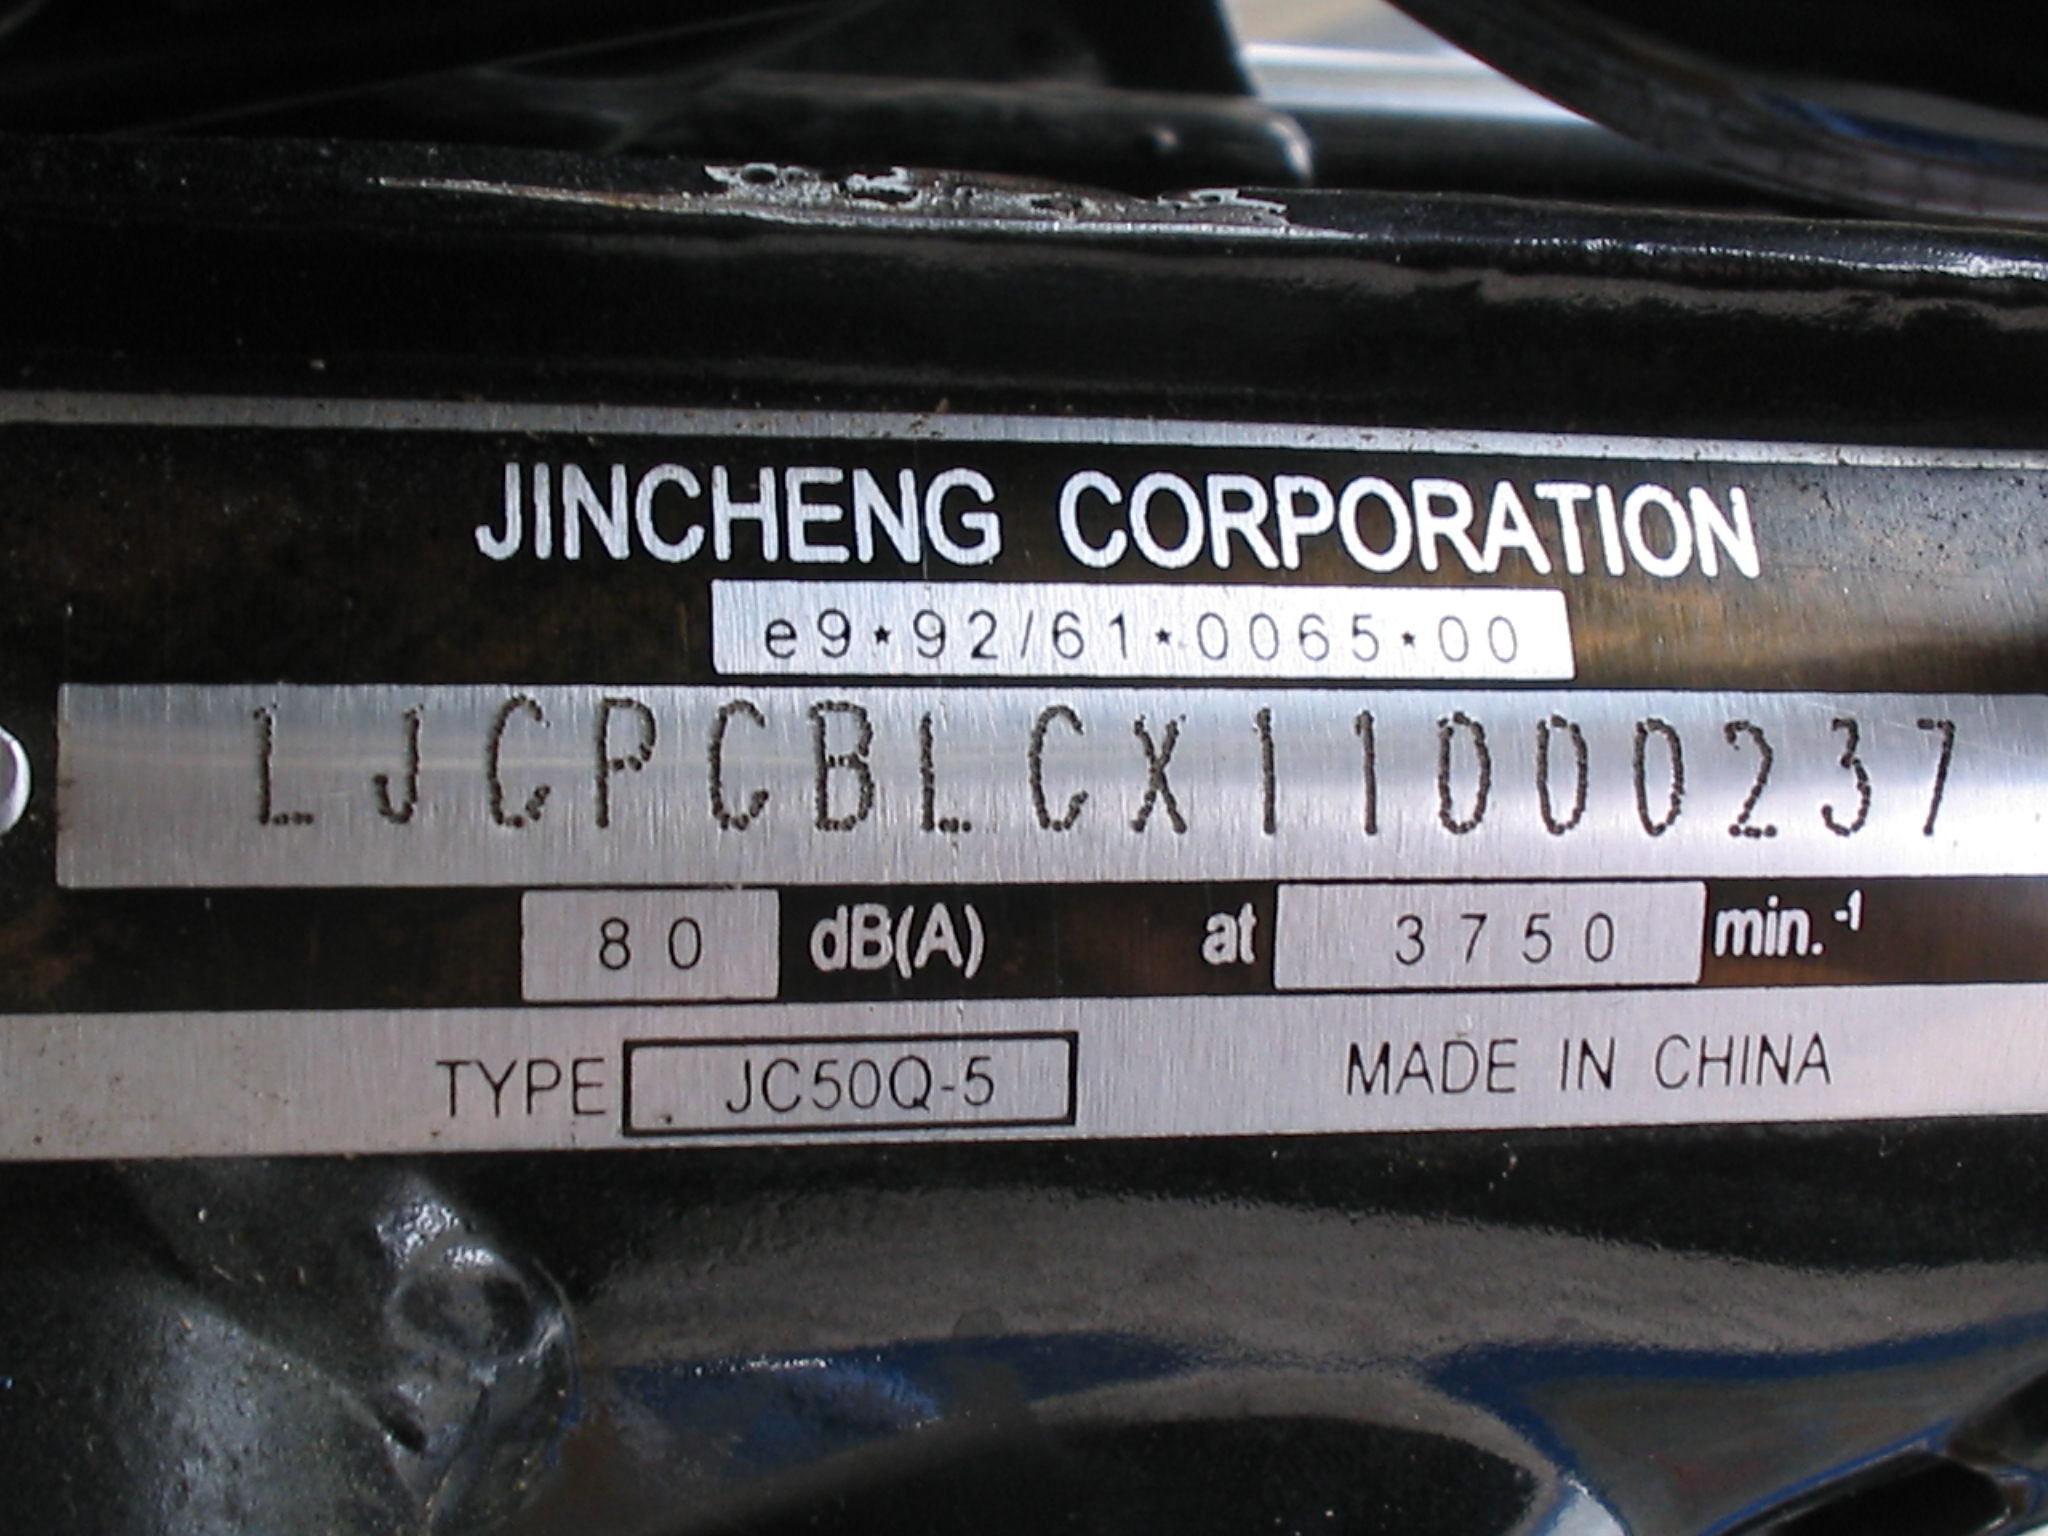  Custom Universal Vin Number Id Plate : Automotive